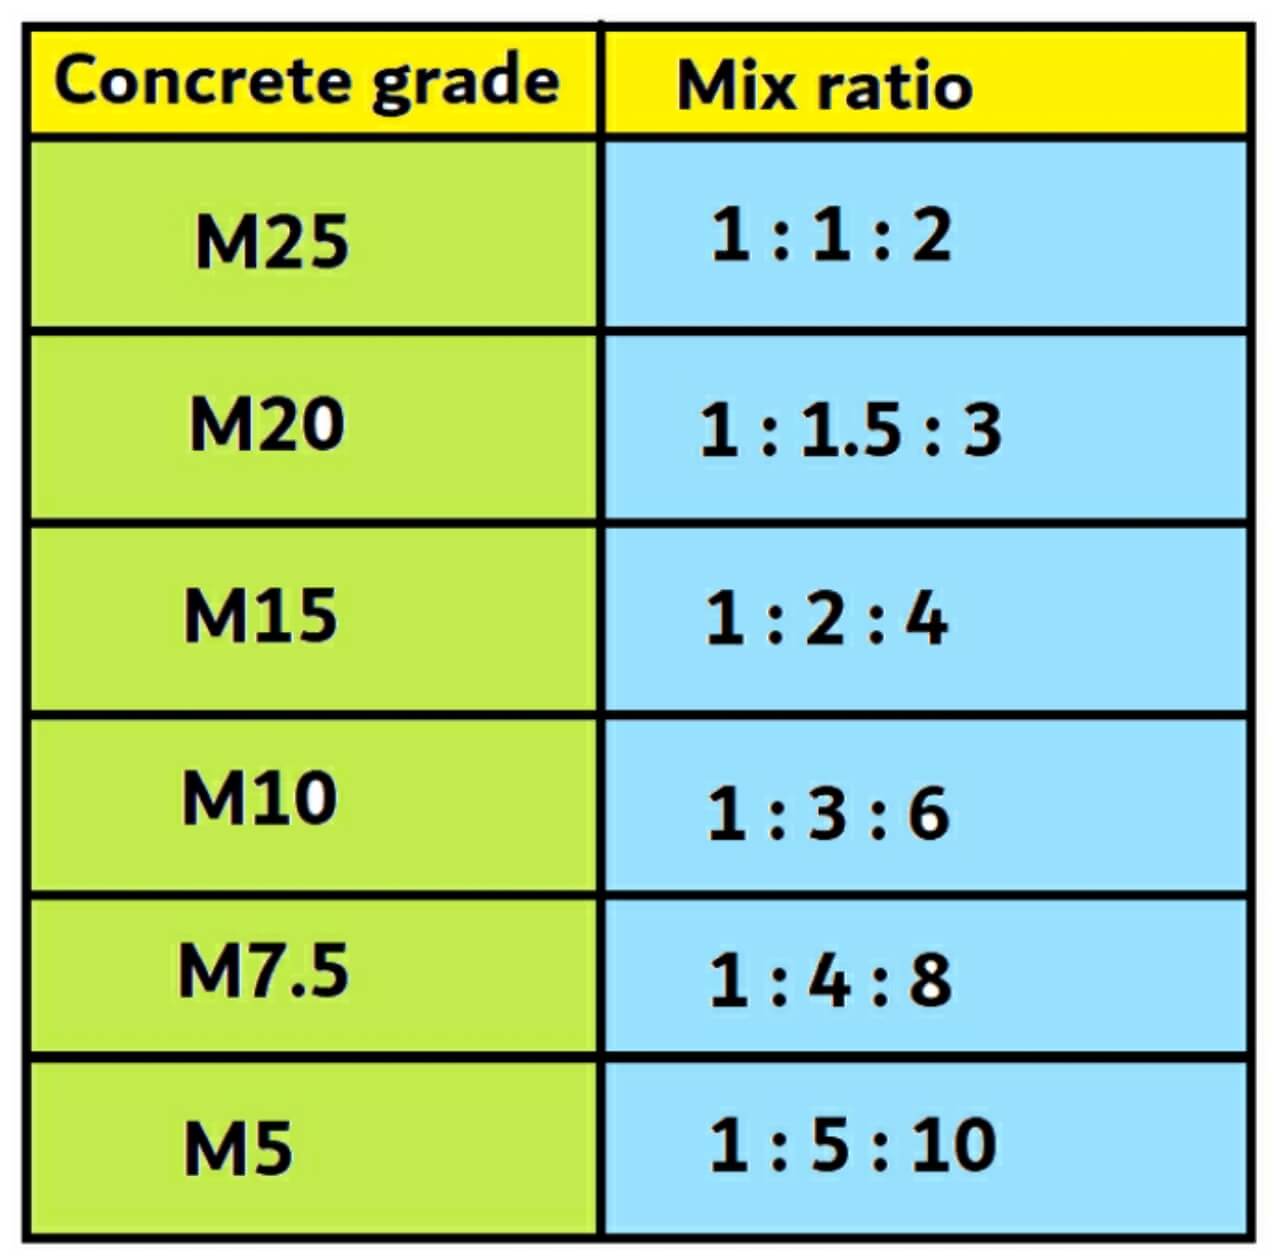 Concrete grade and their ratio